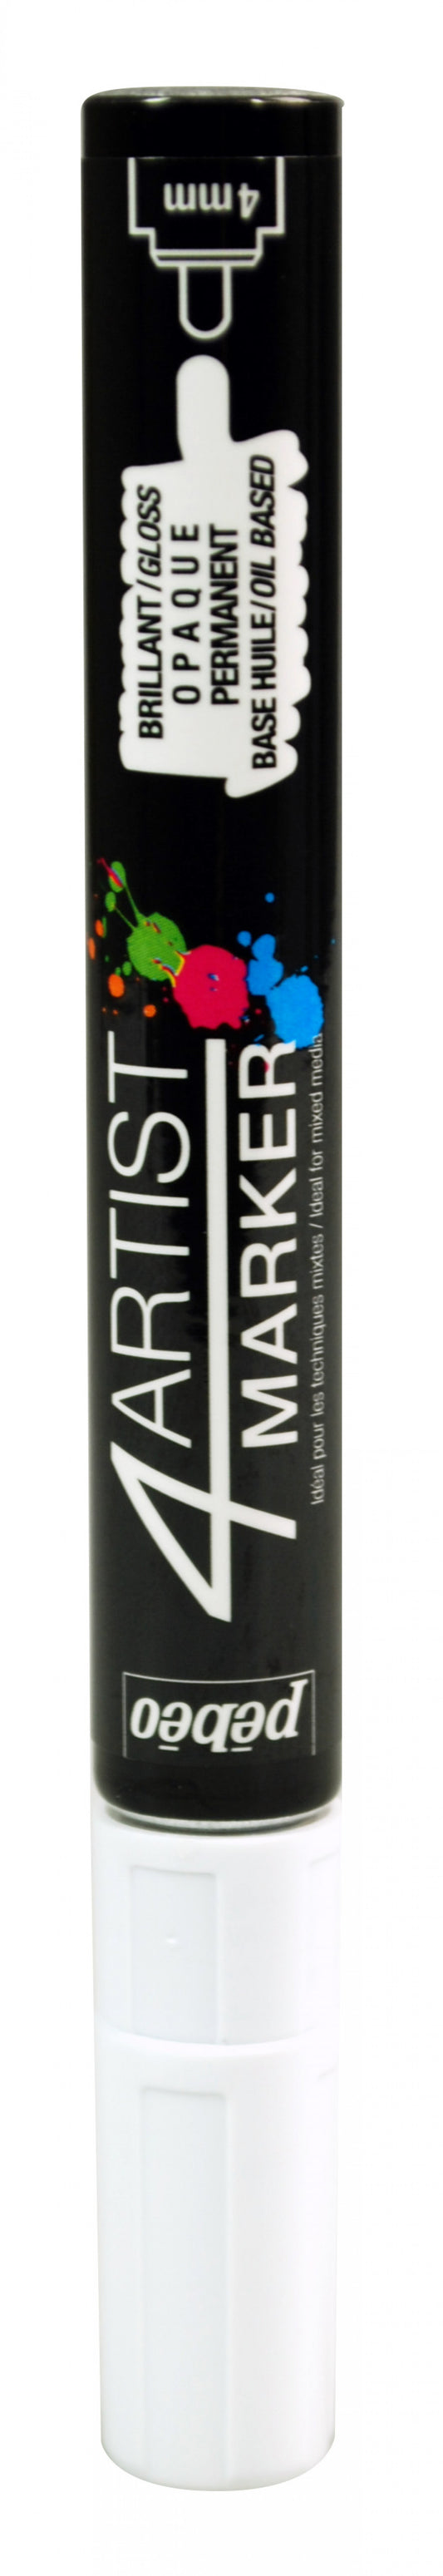 4Artist marker pen 4mm tip White